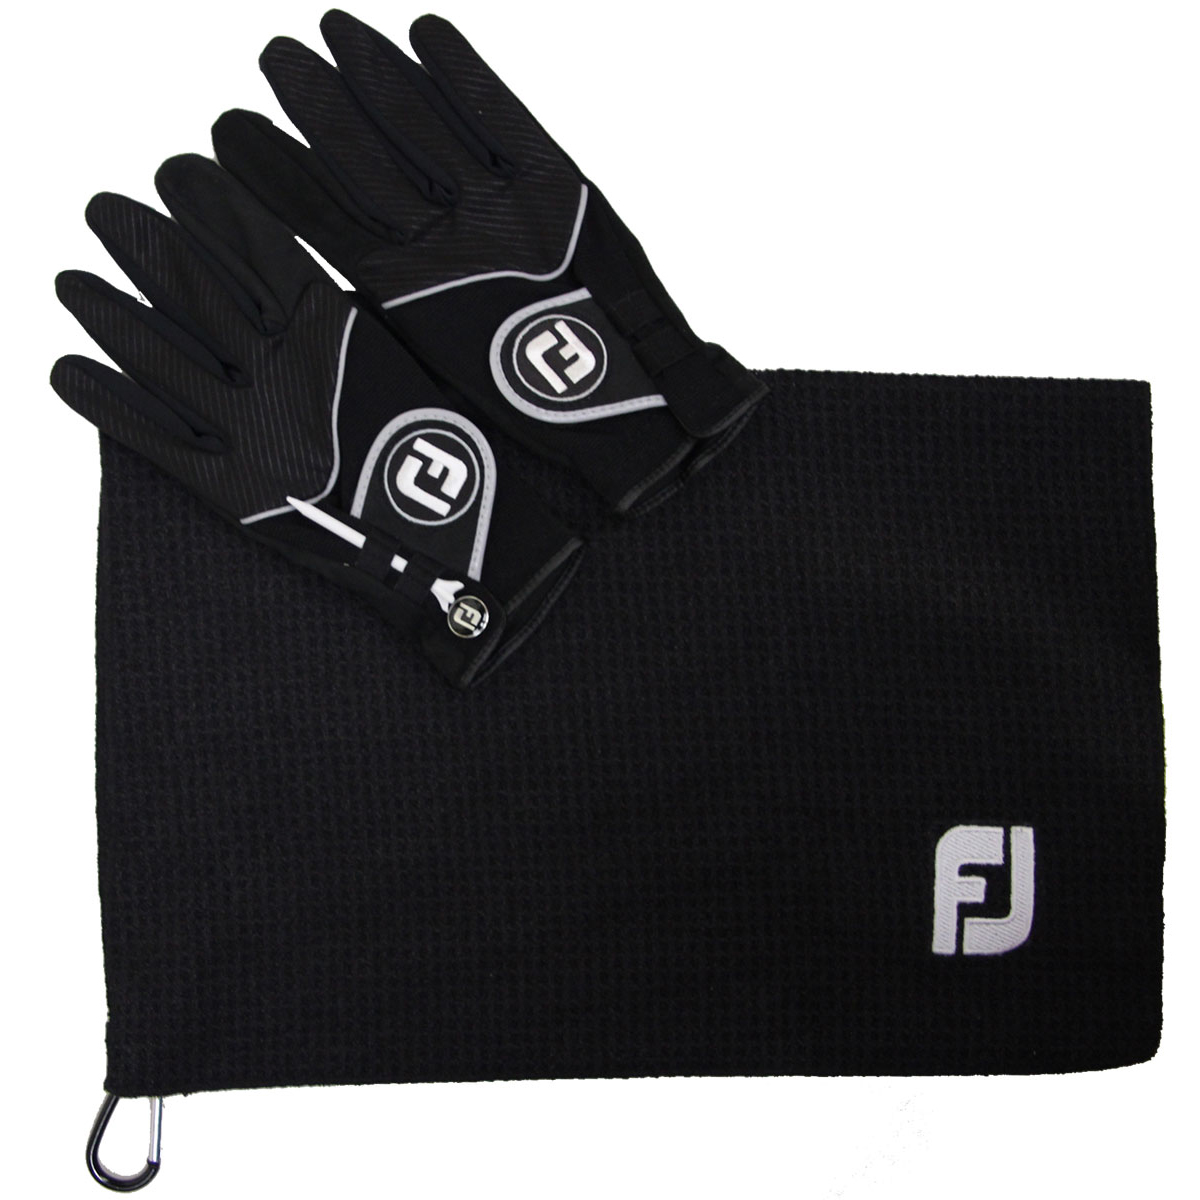 fj rain gloves